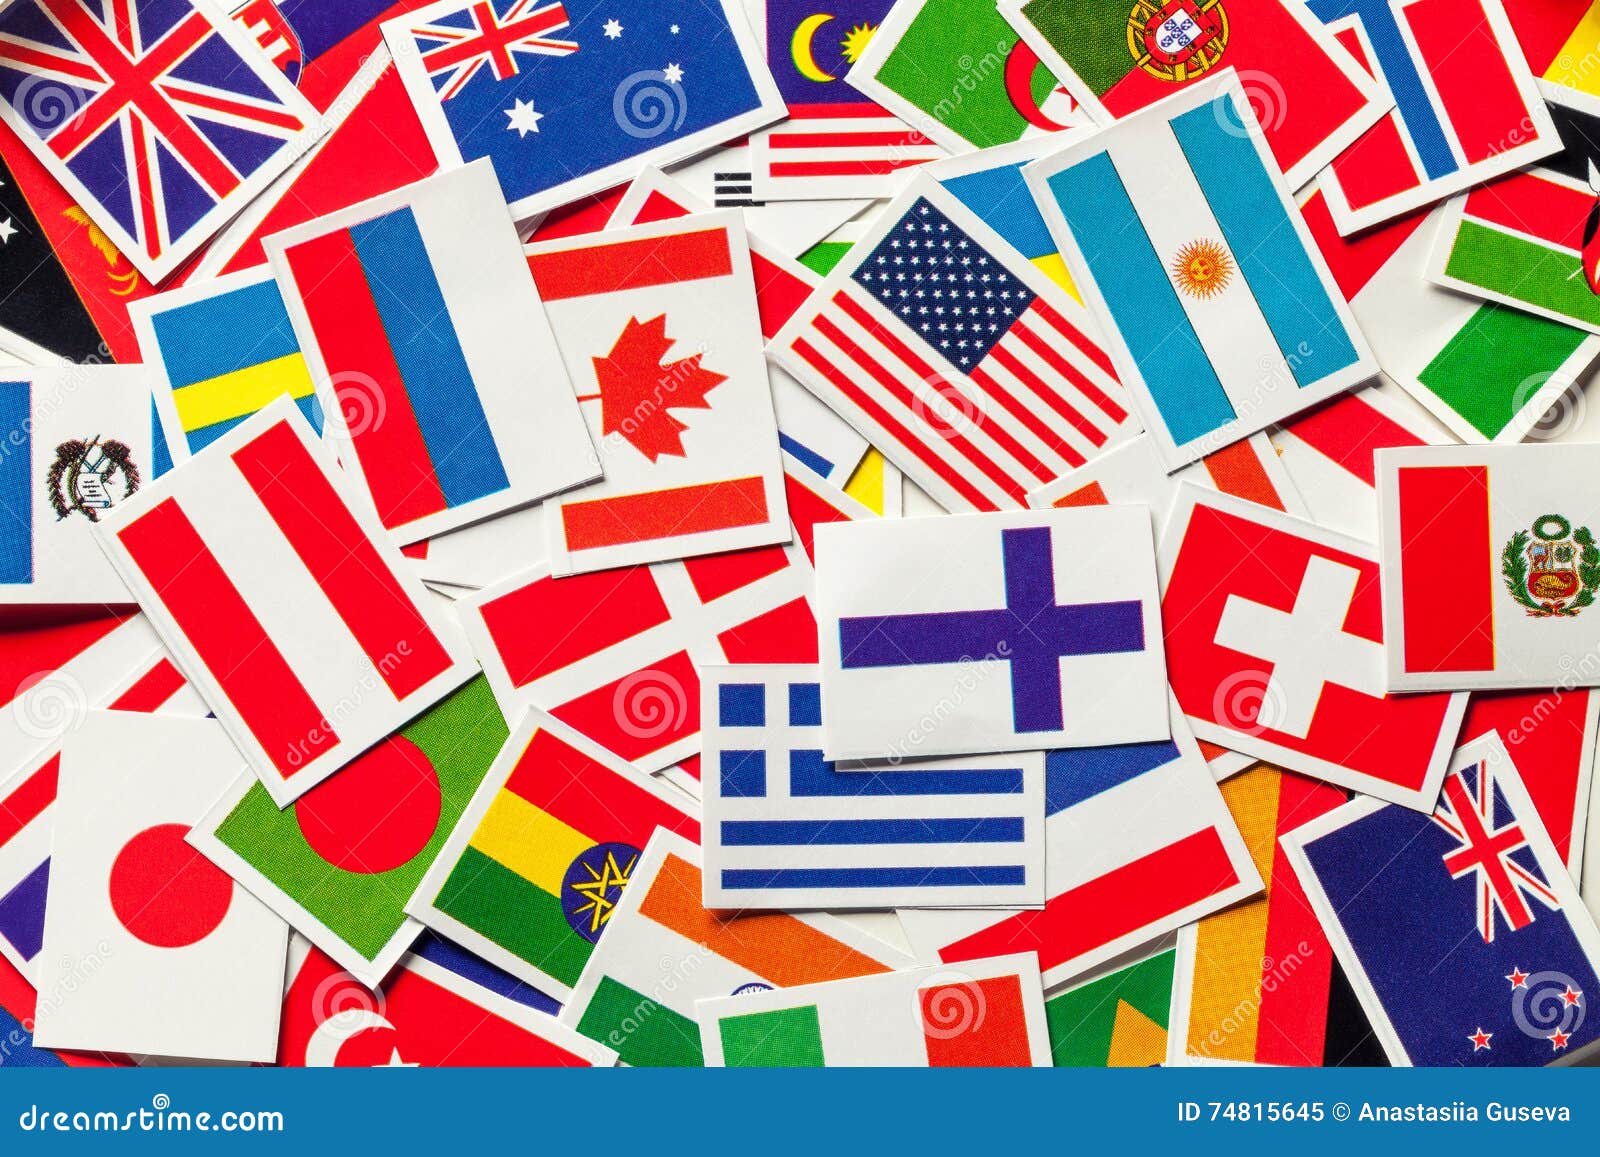 1,611,242 Banderas De Todos Los Países Del Mundo Royalty-Free Images, Stock  Photos & Pictures